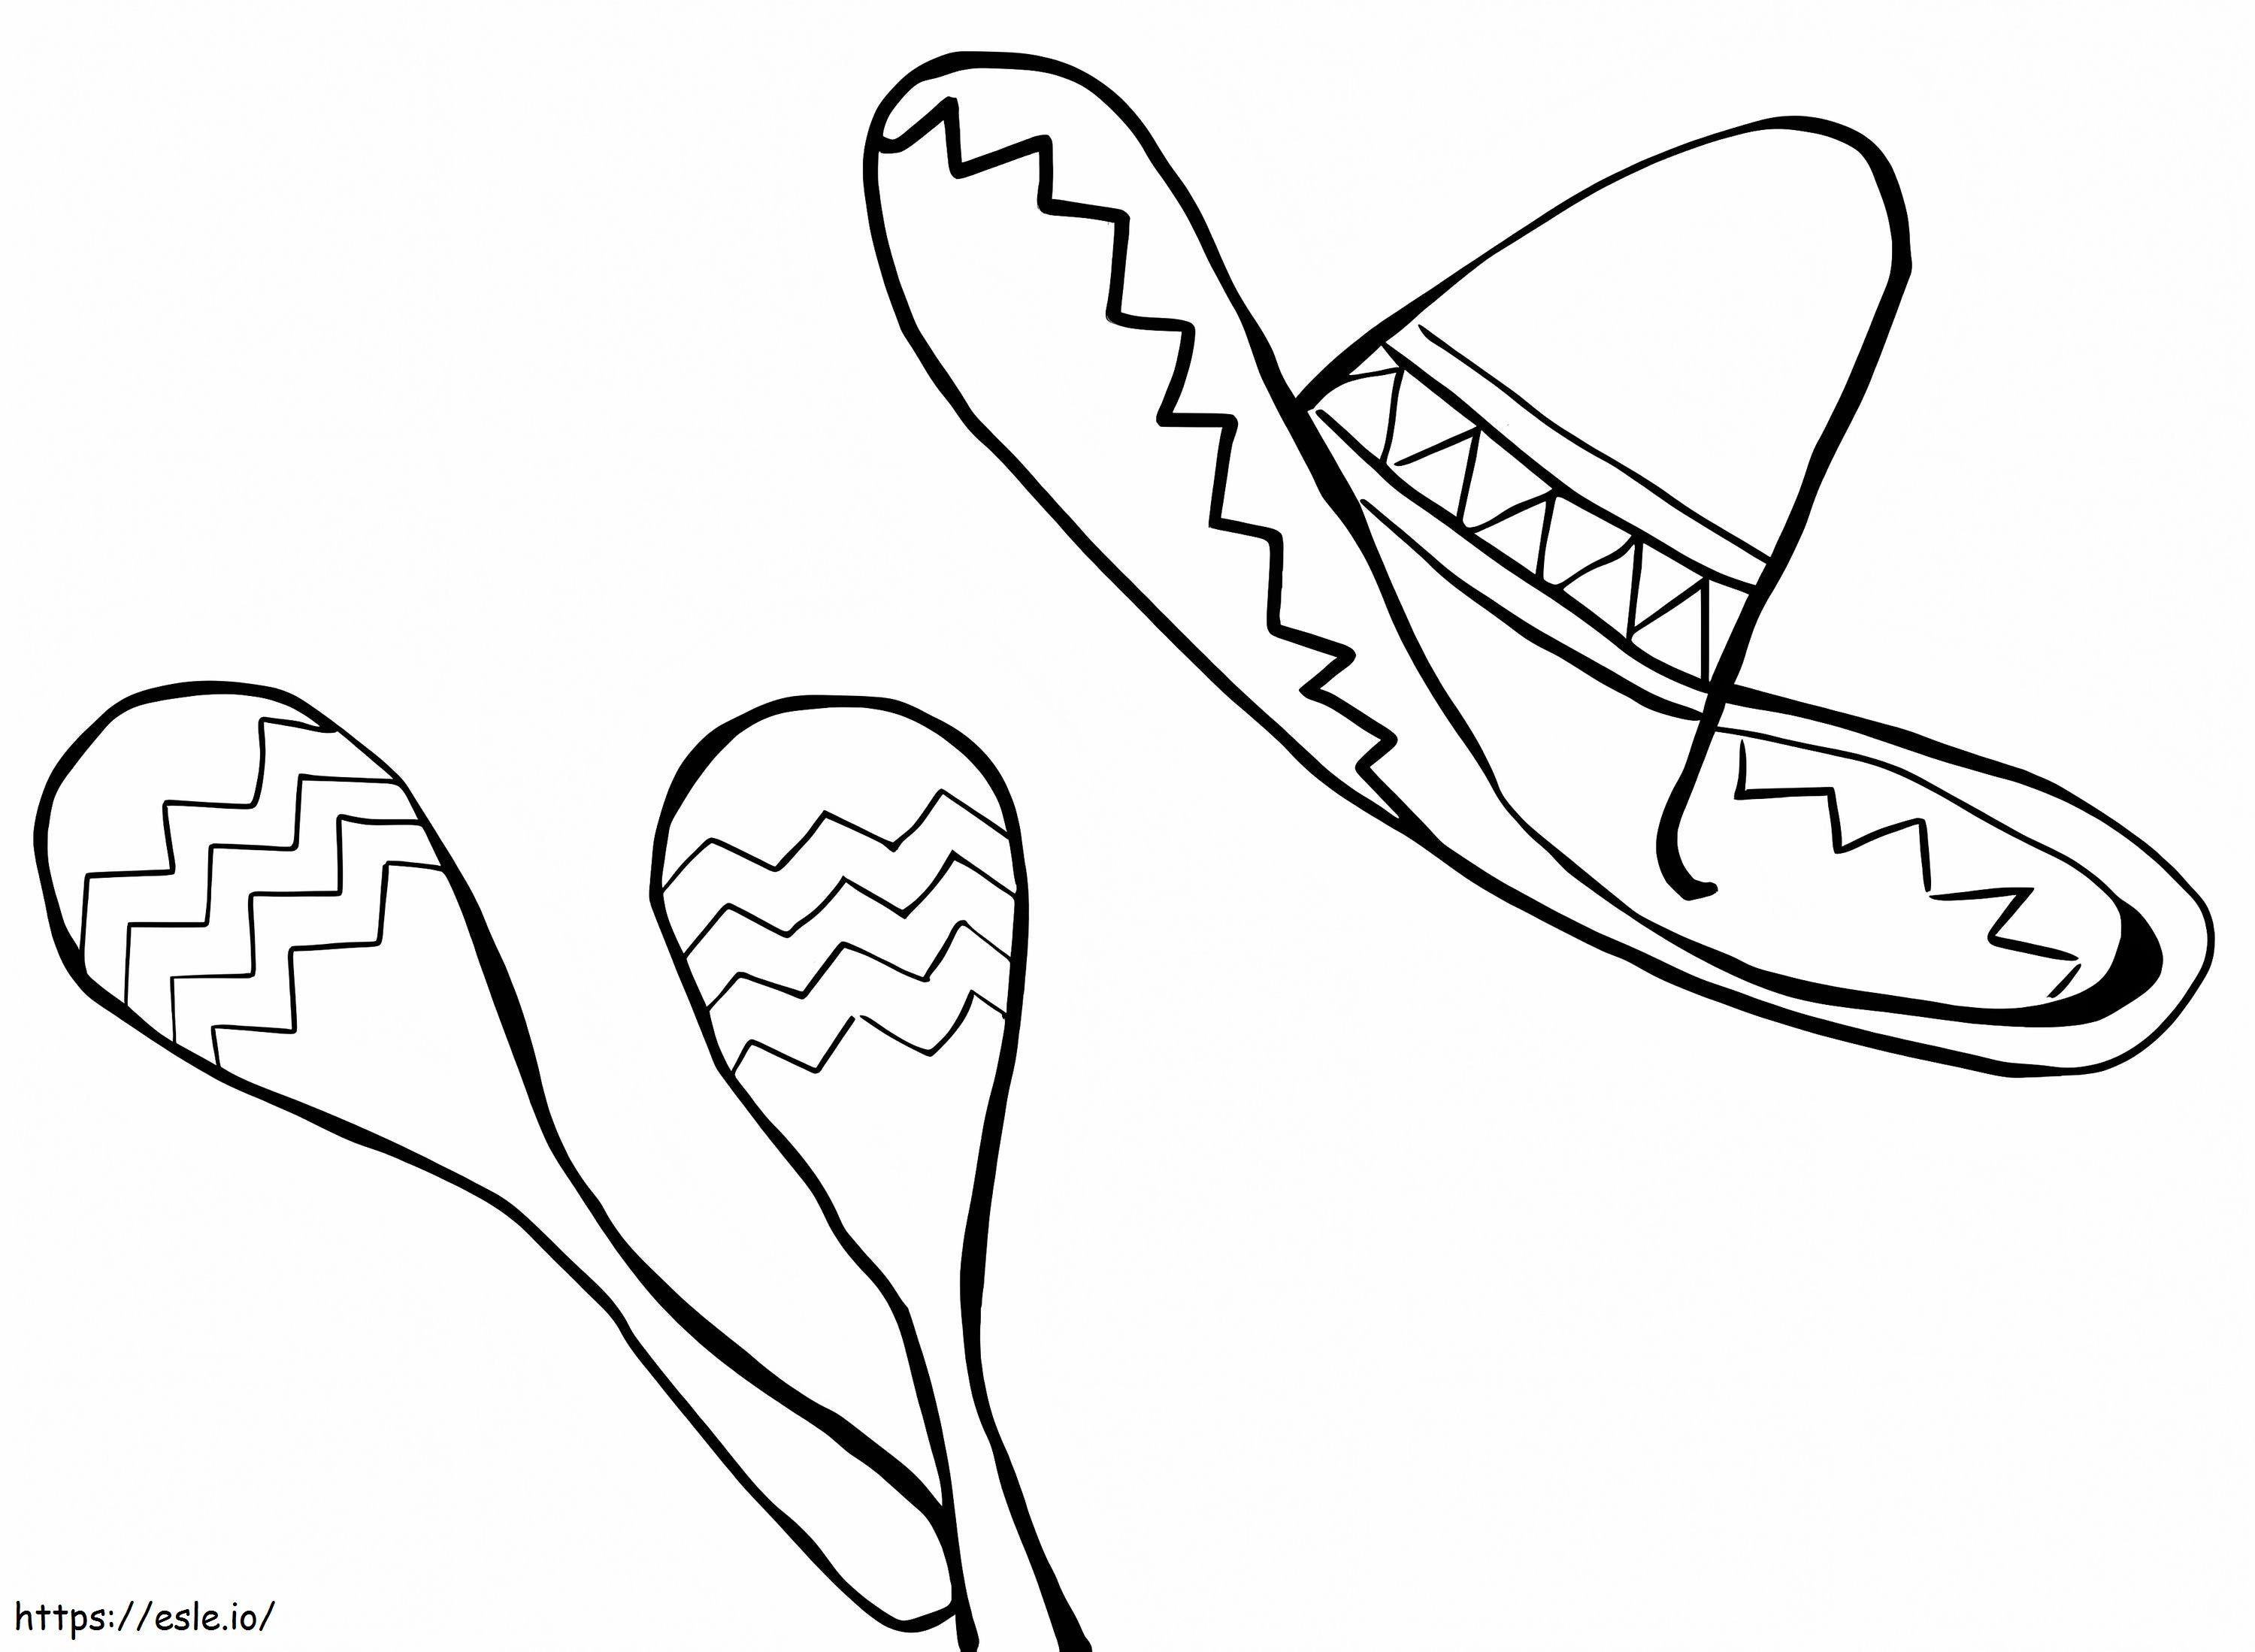 Marakasy I Meksykański Kapelusz kolorowanka